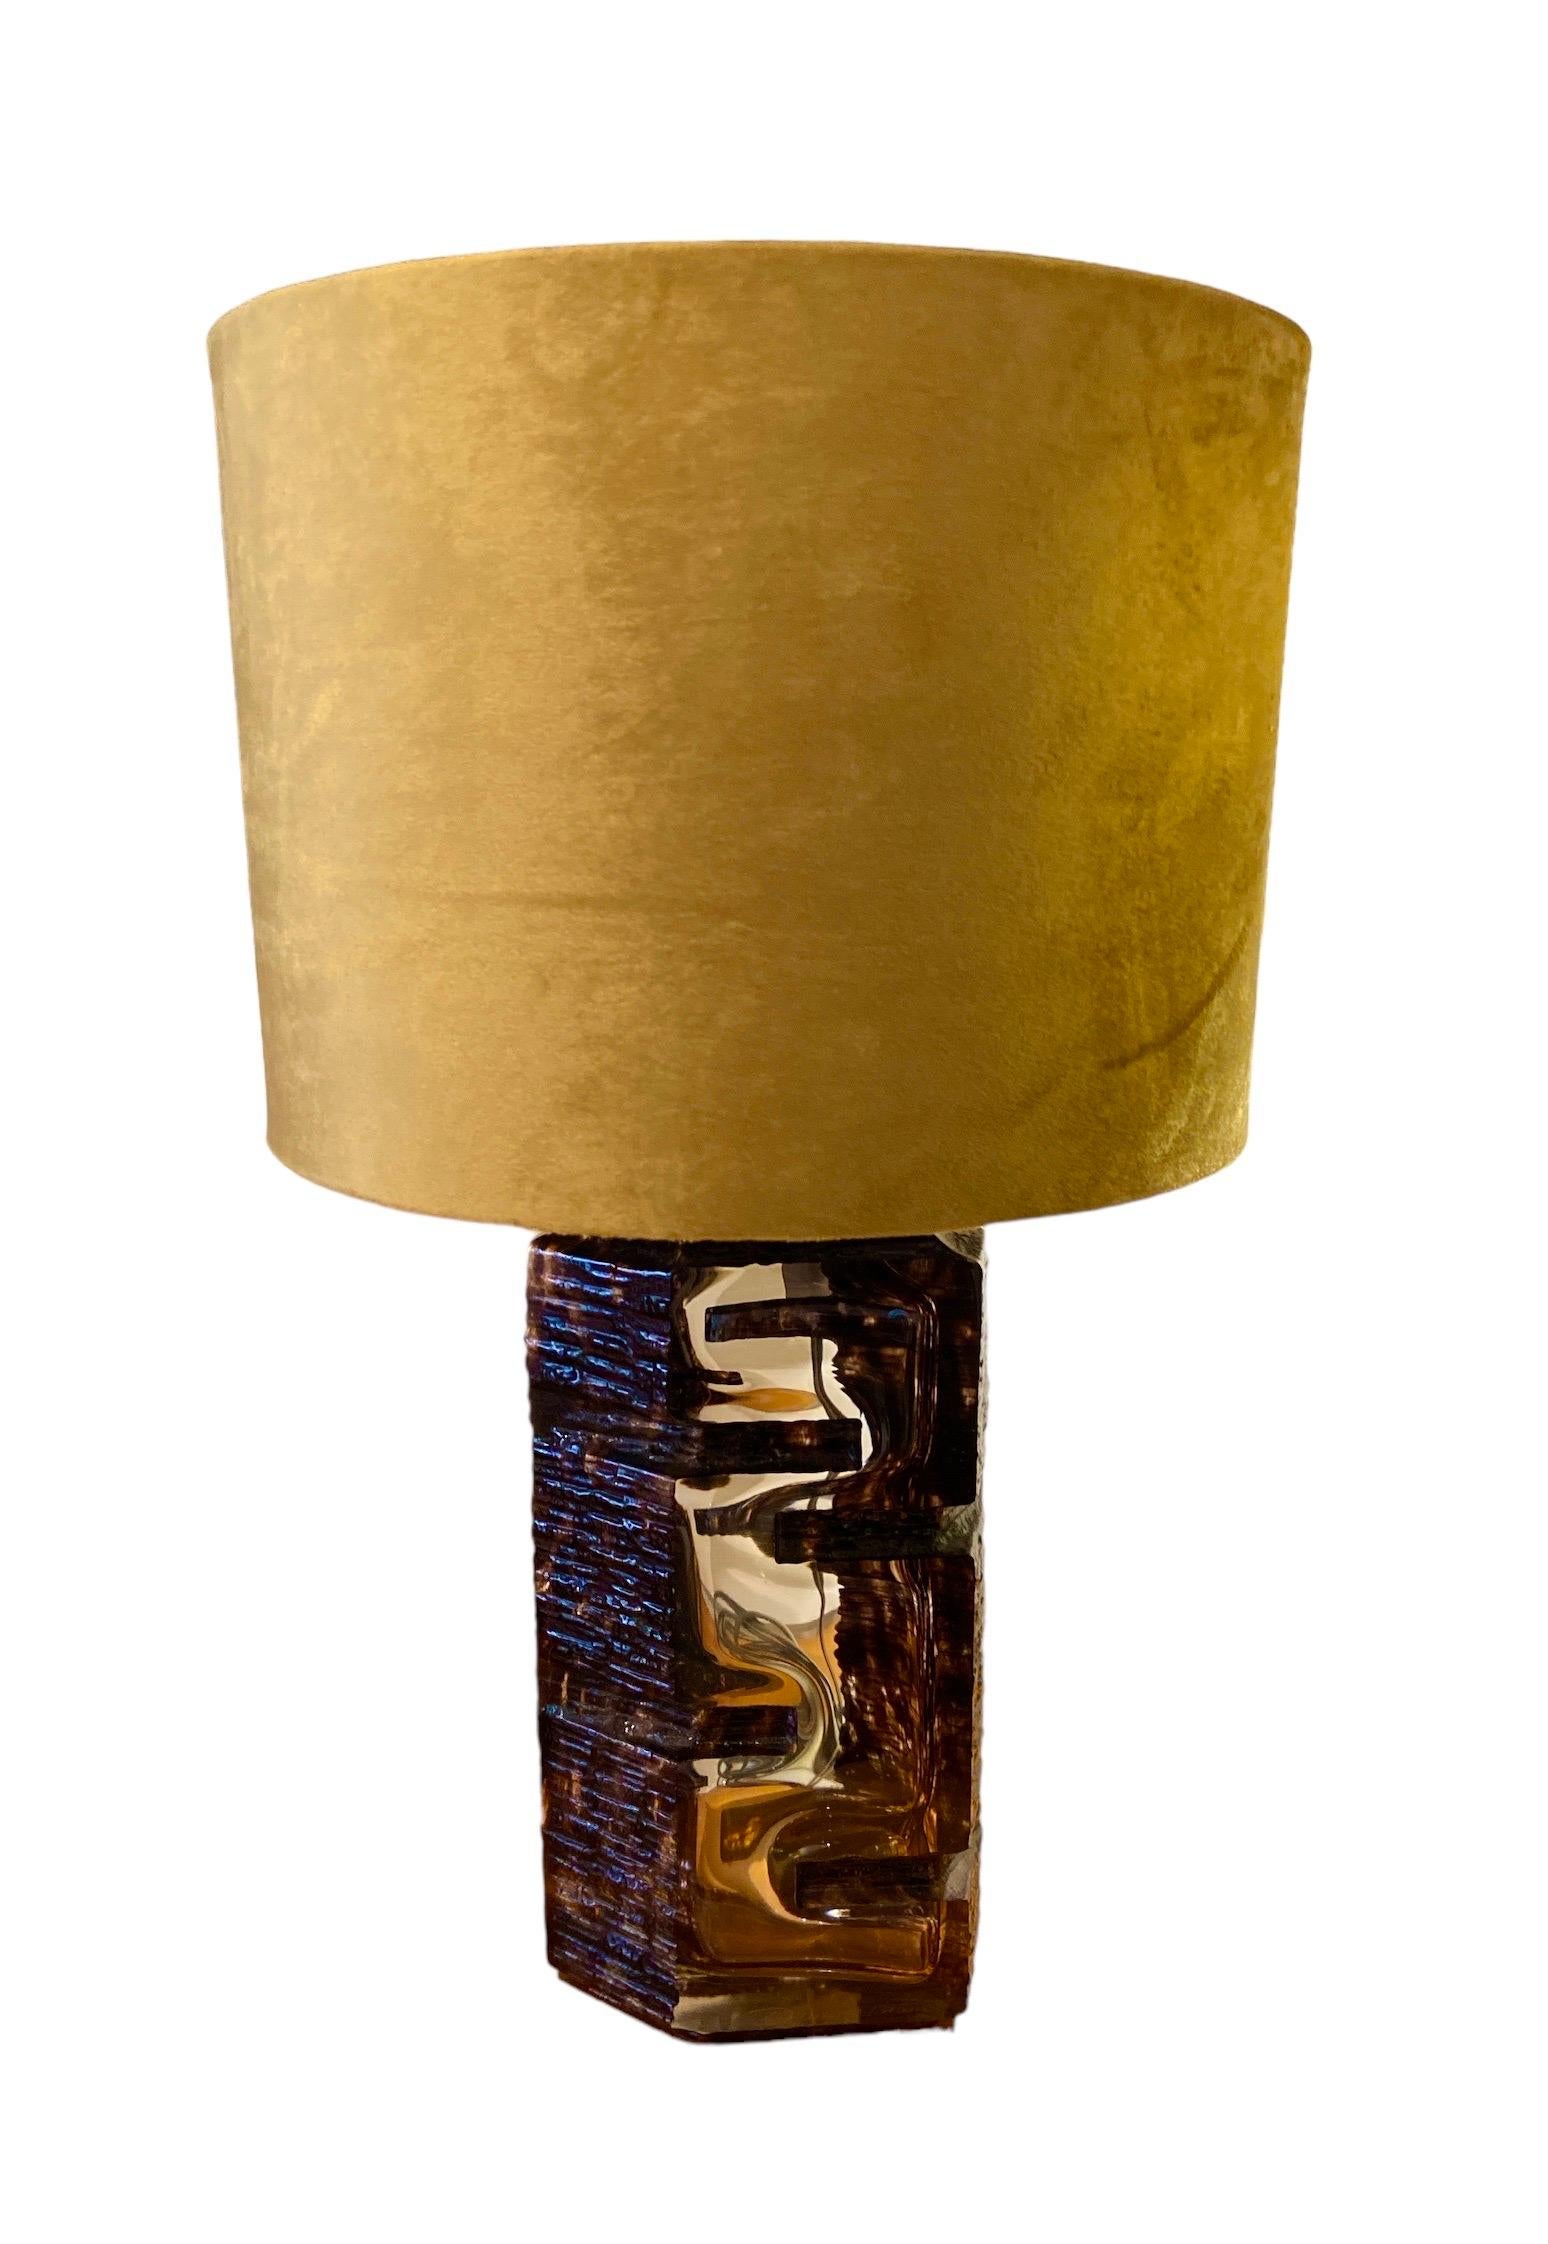 Brutalistischer Tisch von César Baldaccini für Daum, Frankreich.
Modell: Argos, aus Kristallglas. 
Höhe: 31,5cm. Breite: 11,5cm. Tiefe: 6,5 cm.